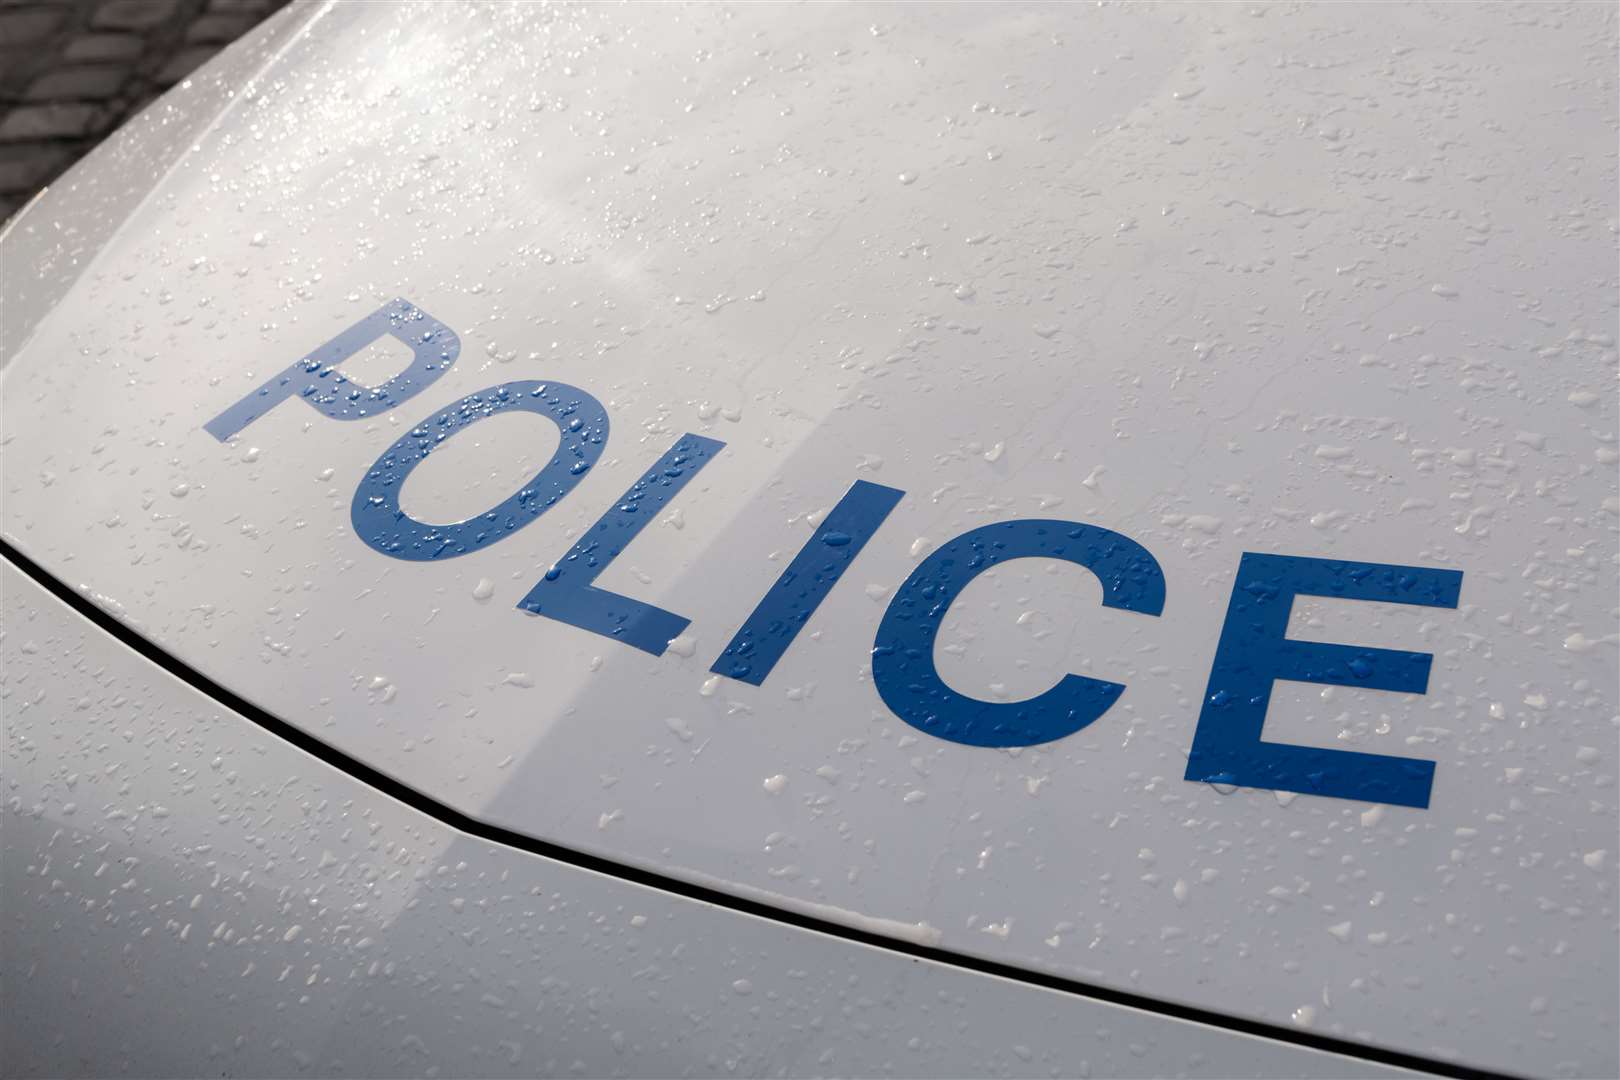 Police officers arrest two suspected drug dealers in James Street, Gillingham. Pic: Stock image